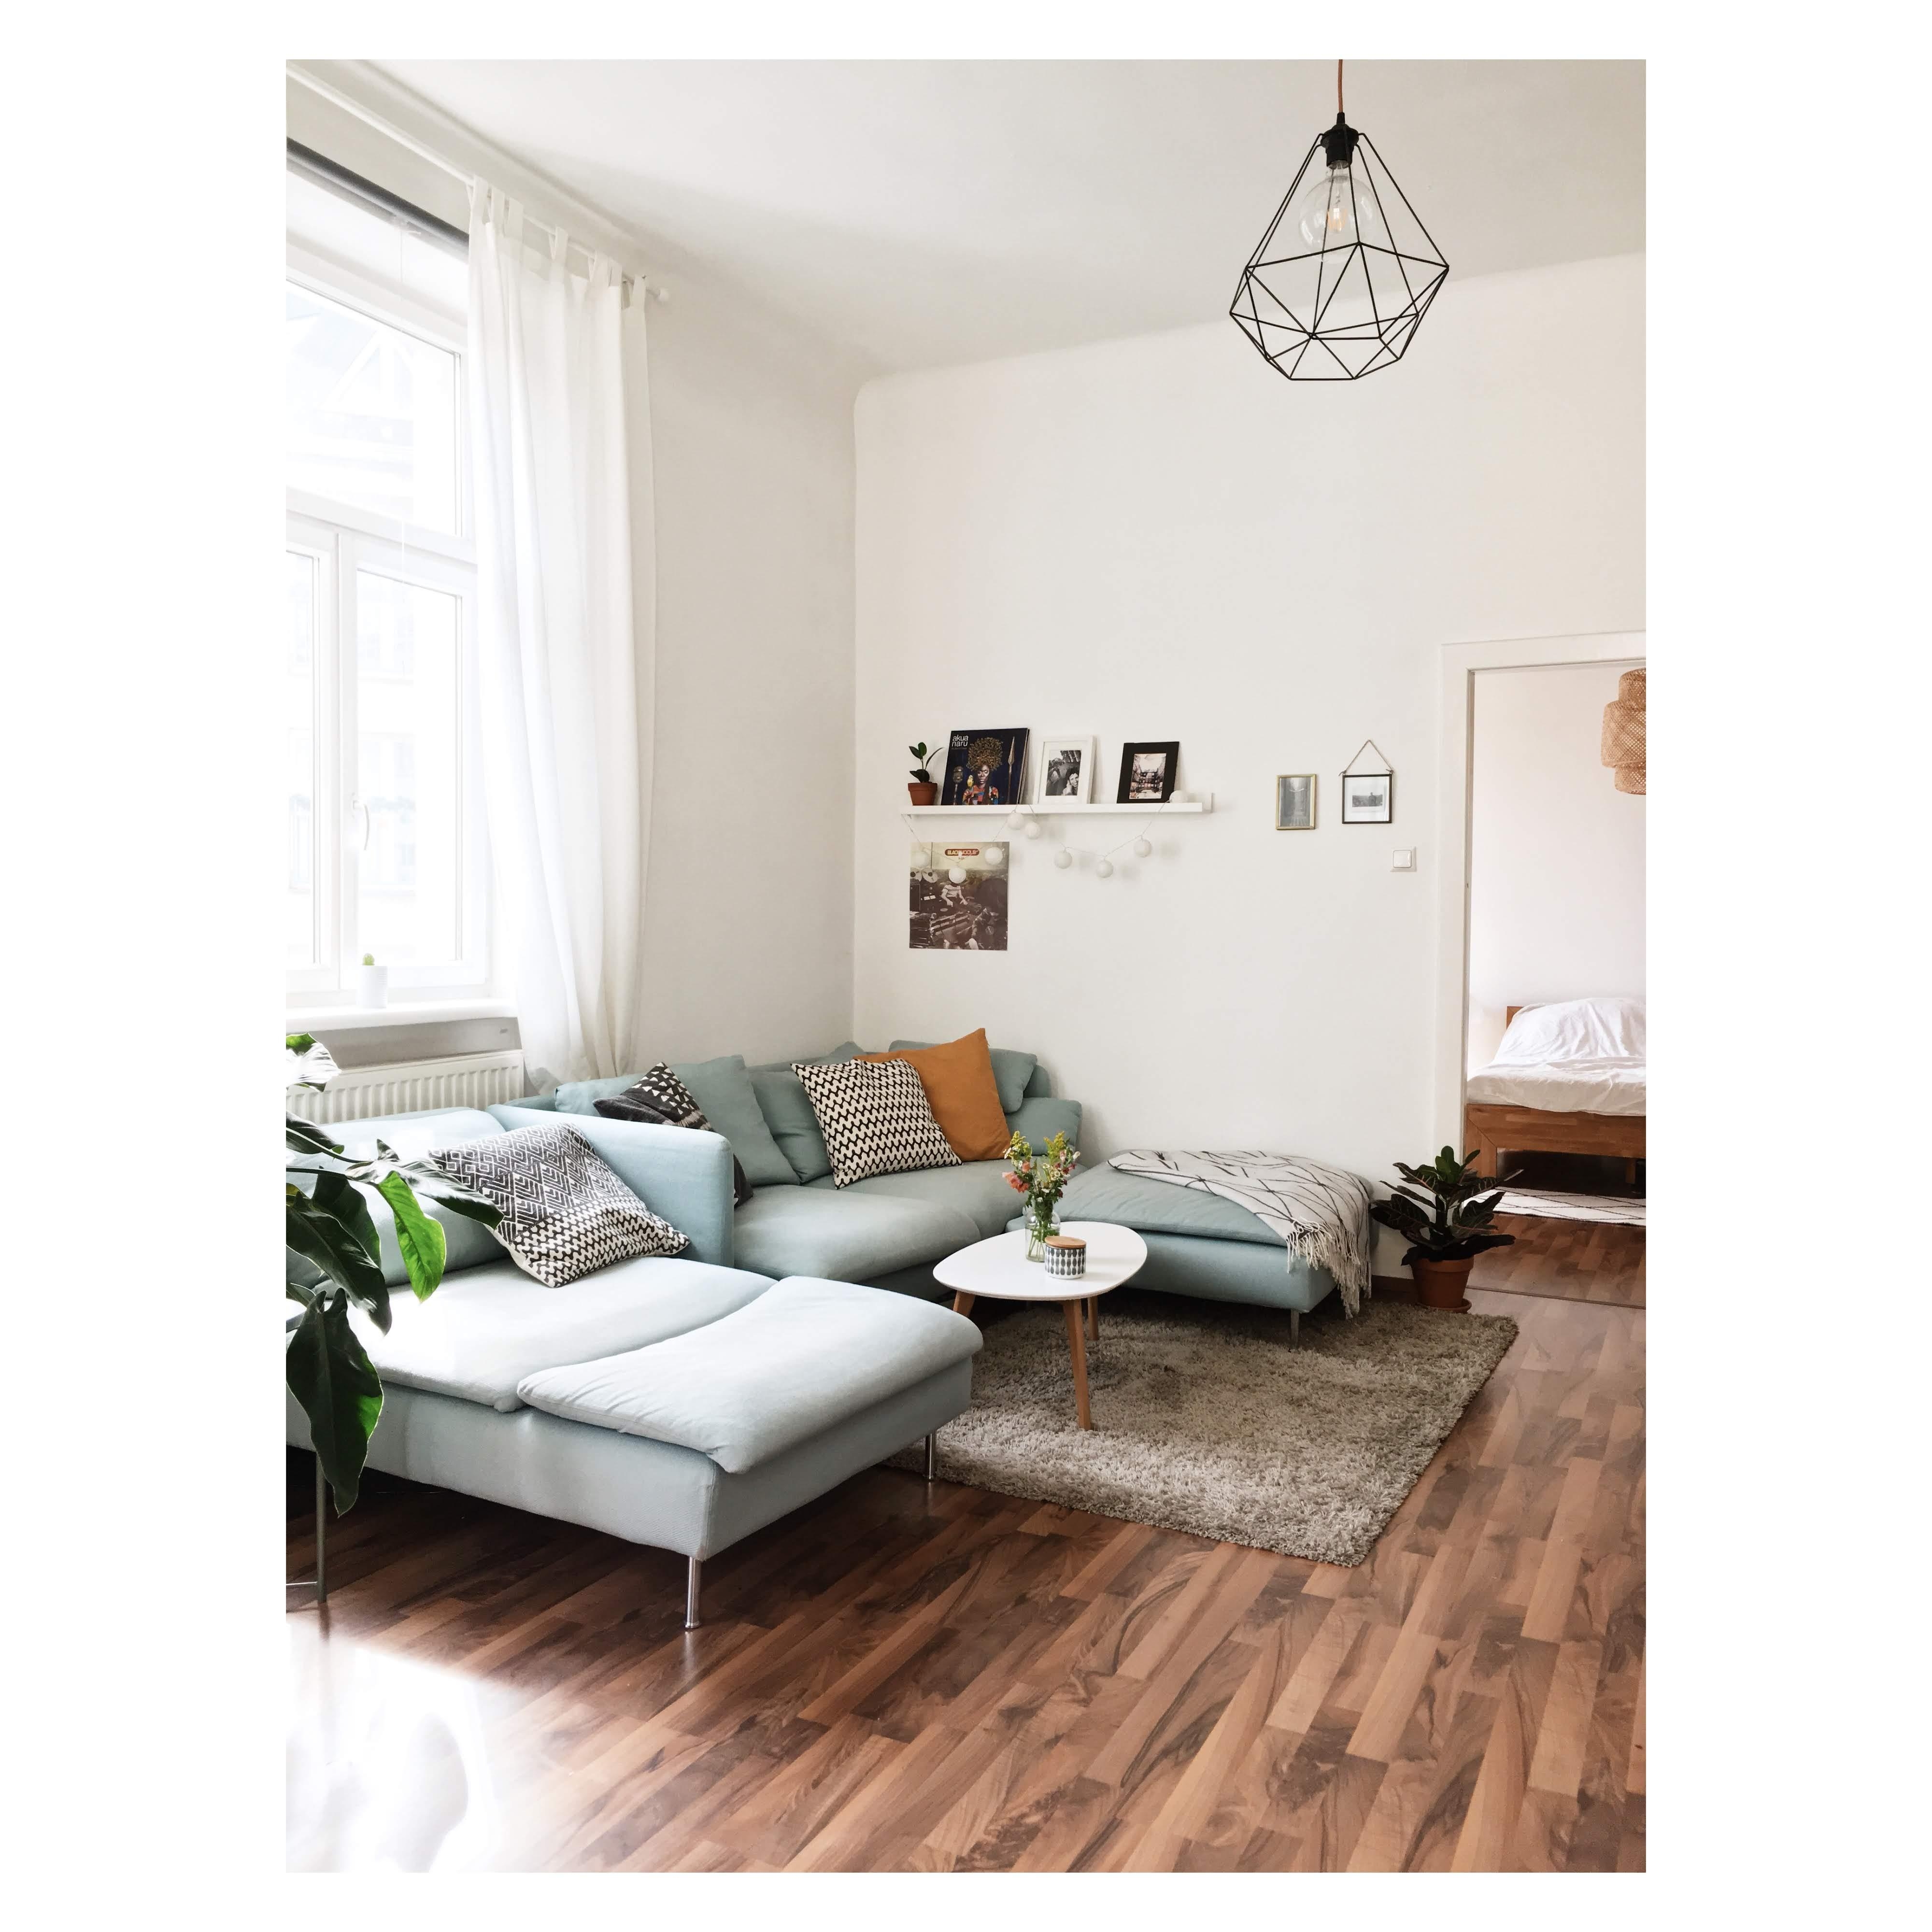 Wohnzimmerimpressionen #damalsalsdiesonnenochgescheinthat #couchstyle #couchmagazin #neuhier